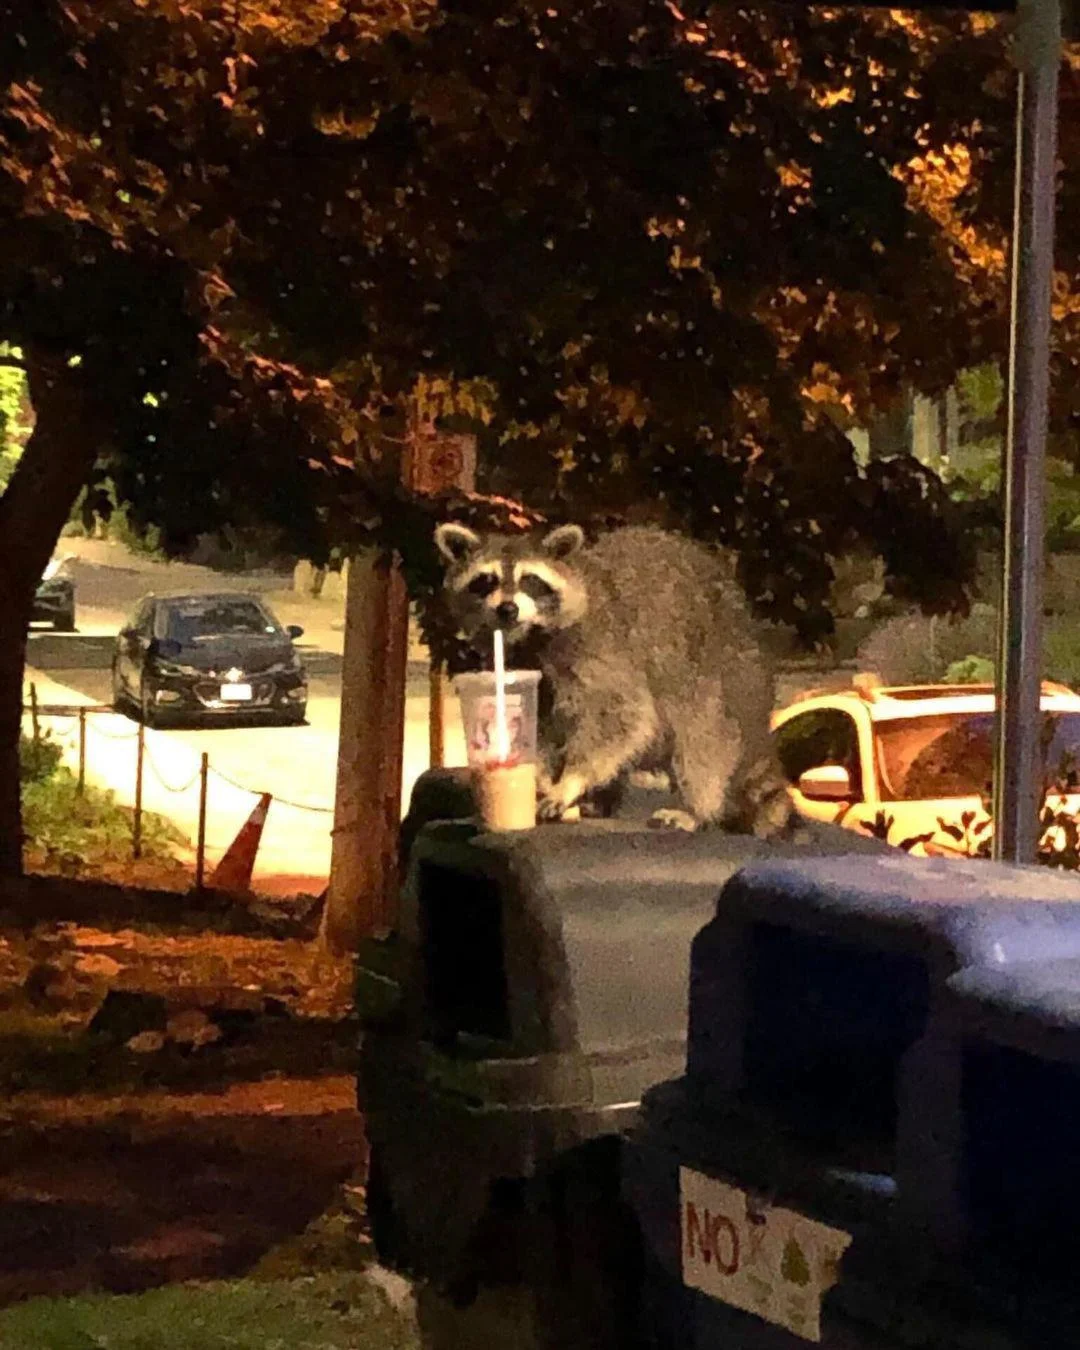 Raccoon enjoying his trash coffee.